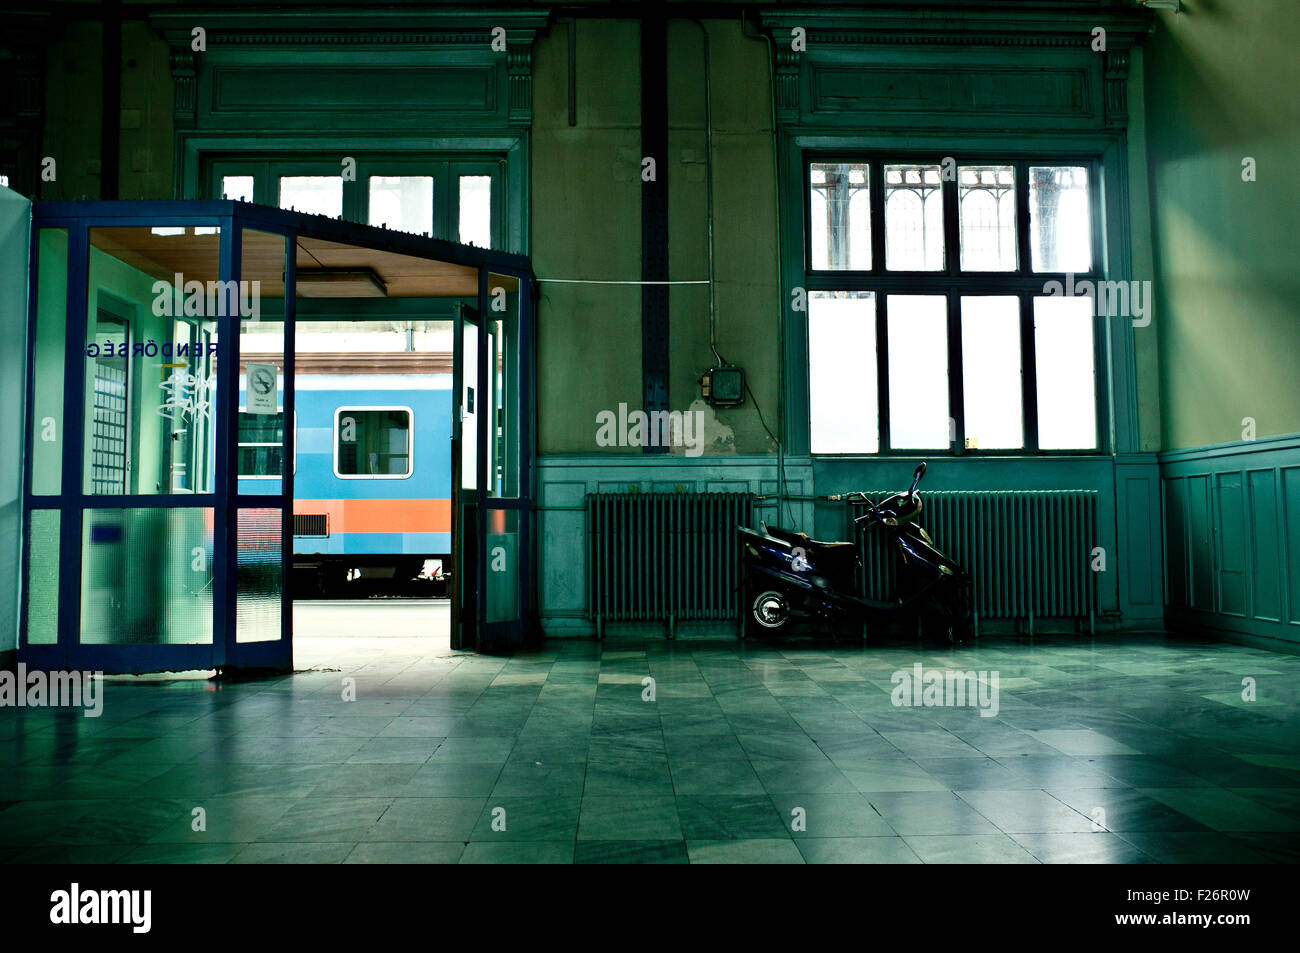 La gare de Nyugati, Budapest, Hongrie Banque D'Images